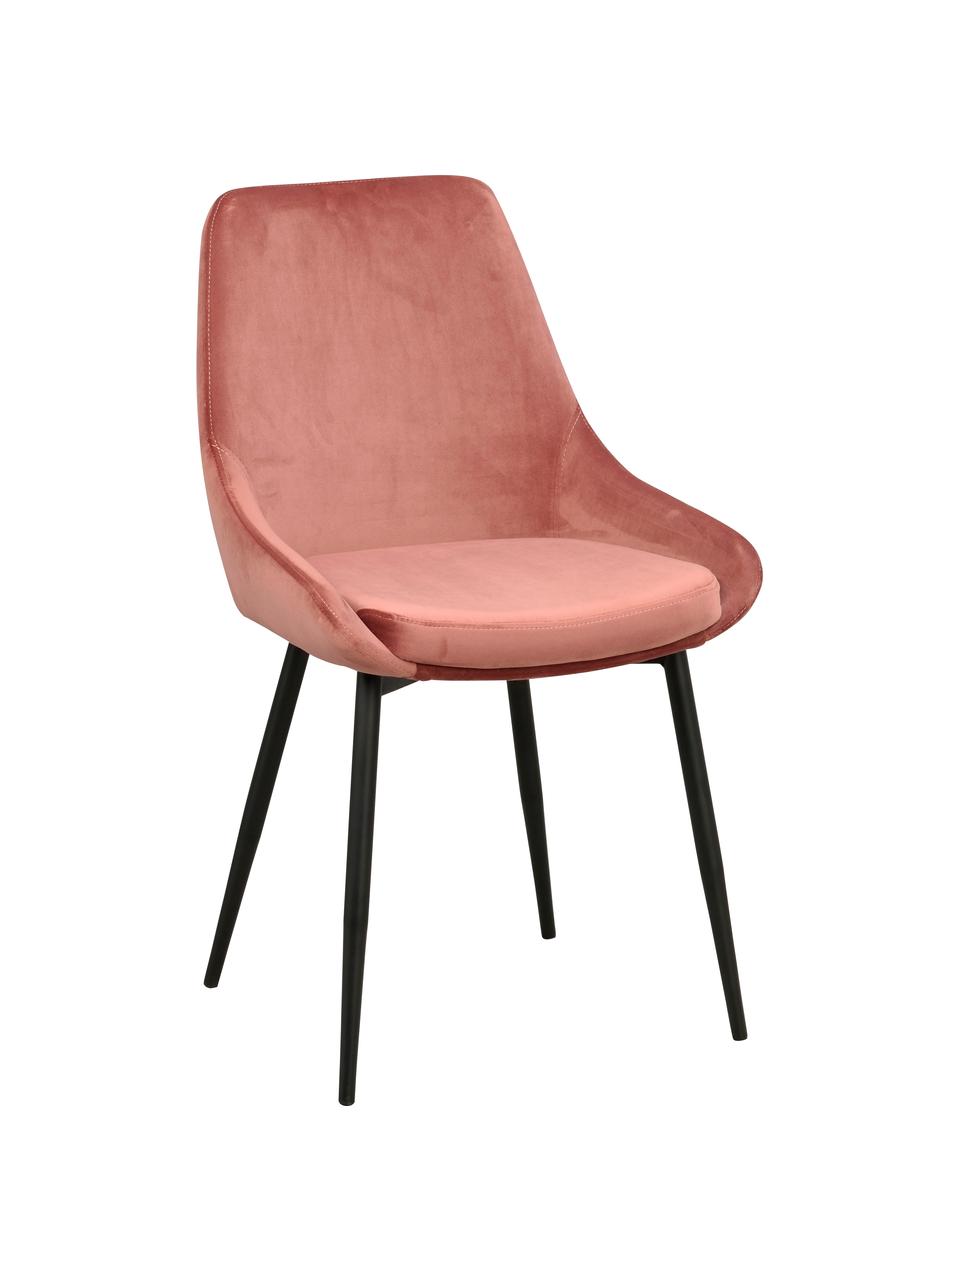 Krzesło tapicerowane z aksamitu Sierra, 2 szt., Tapicerka: aksamit poliestrowy Dzięk, Nogi: metal lakierowany, Bladoróżowy aksamit, S 49 x G 55 cm